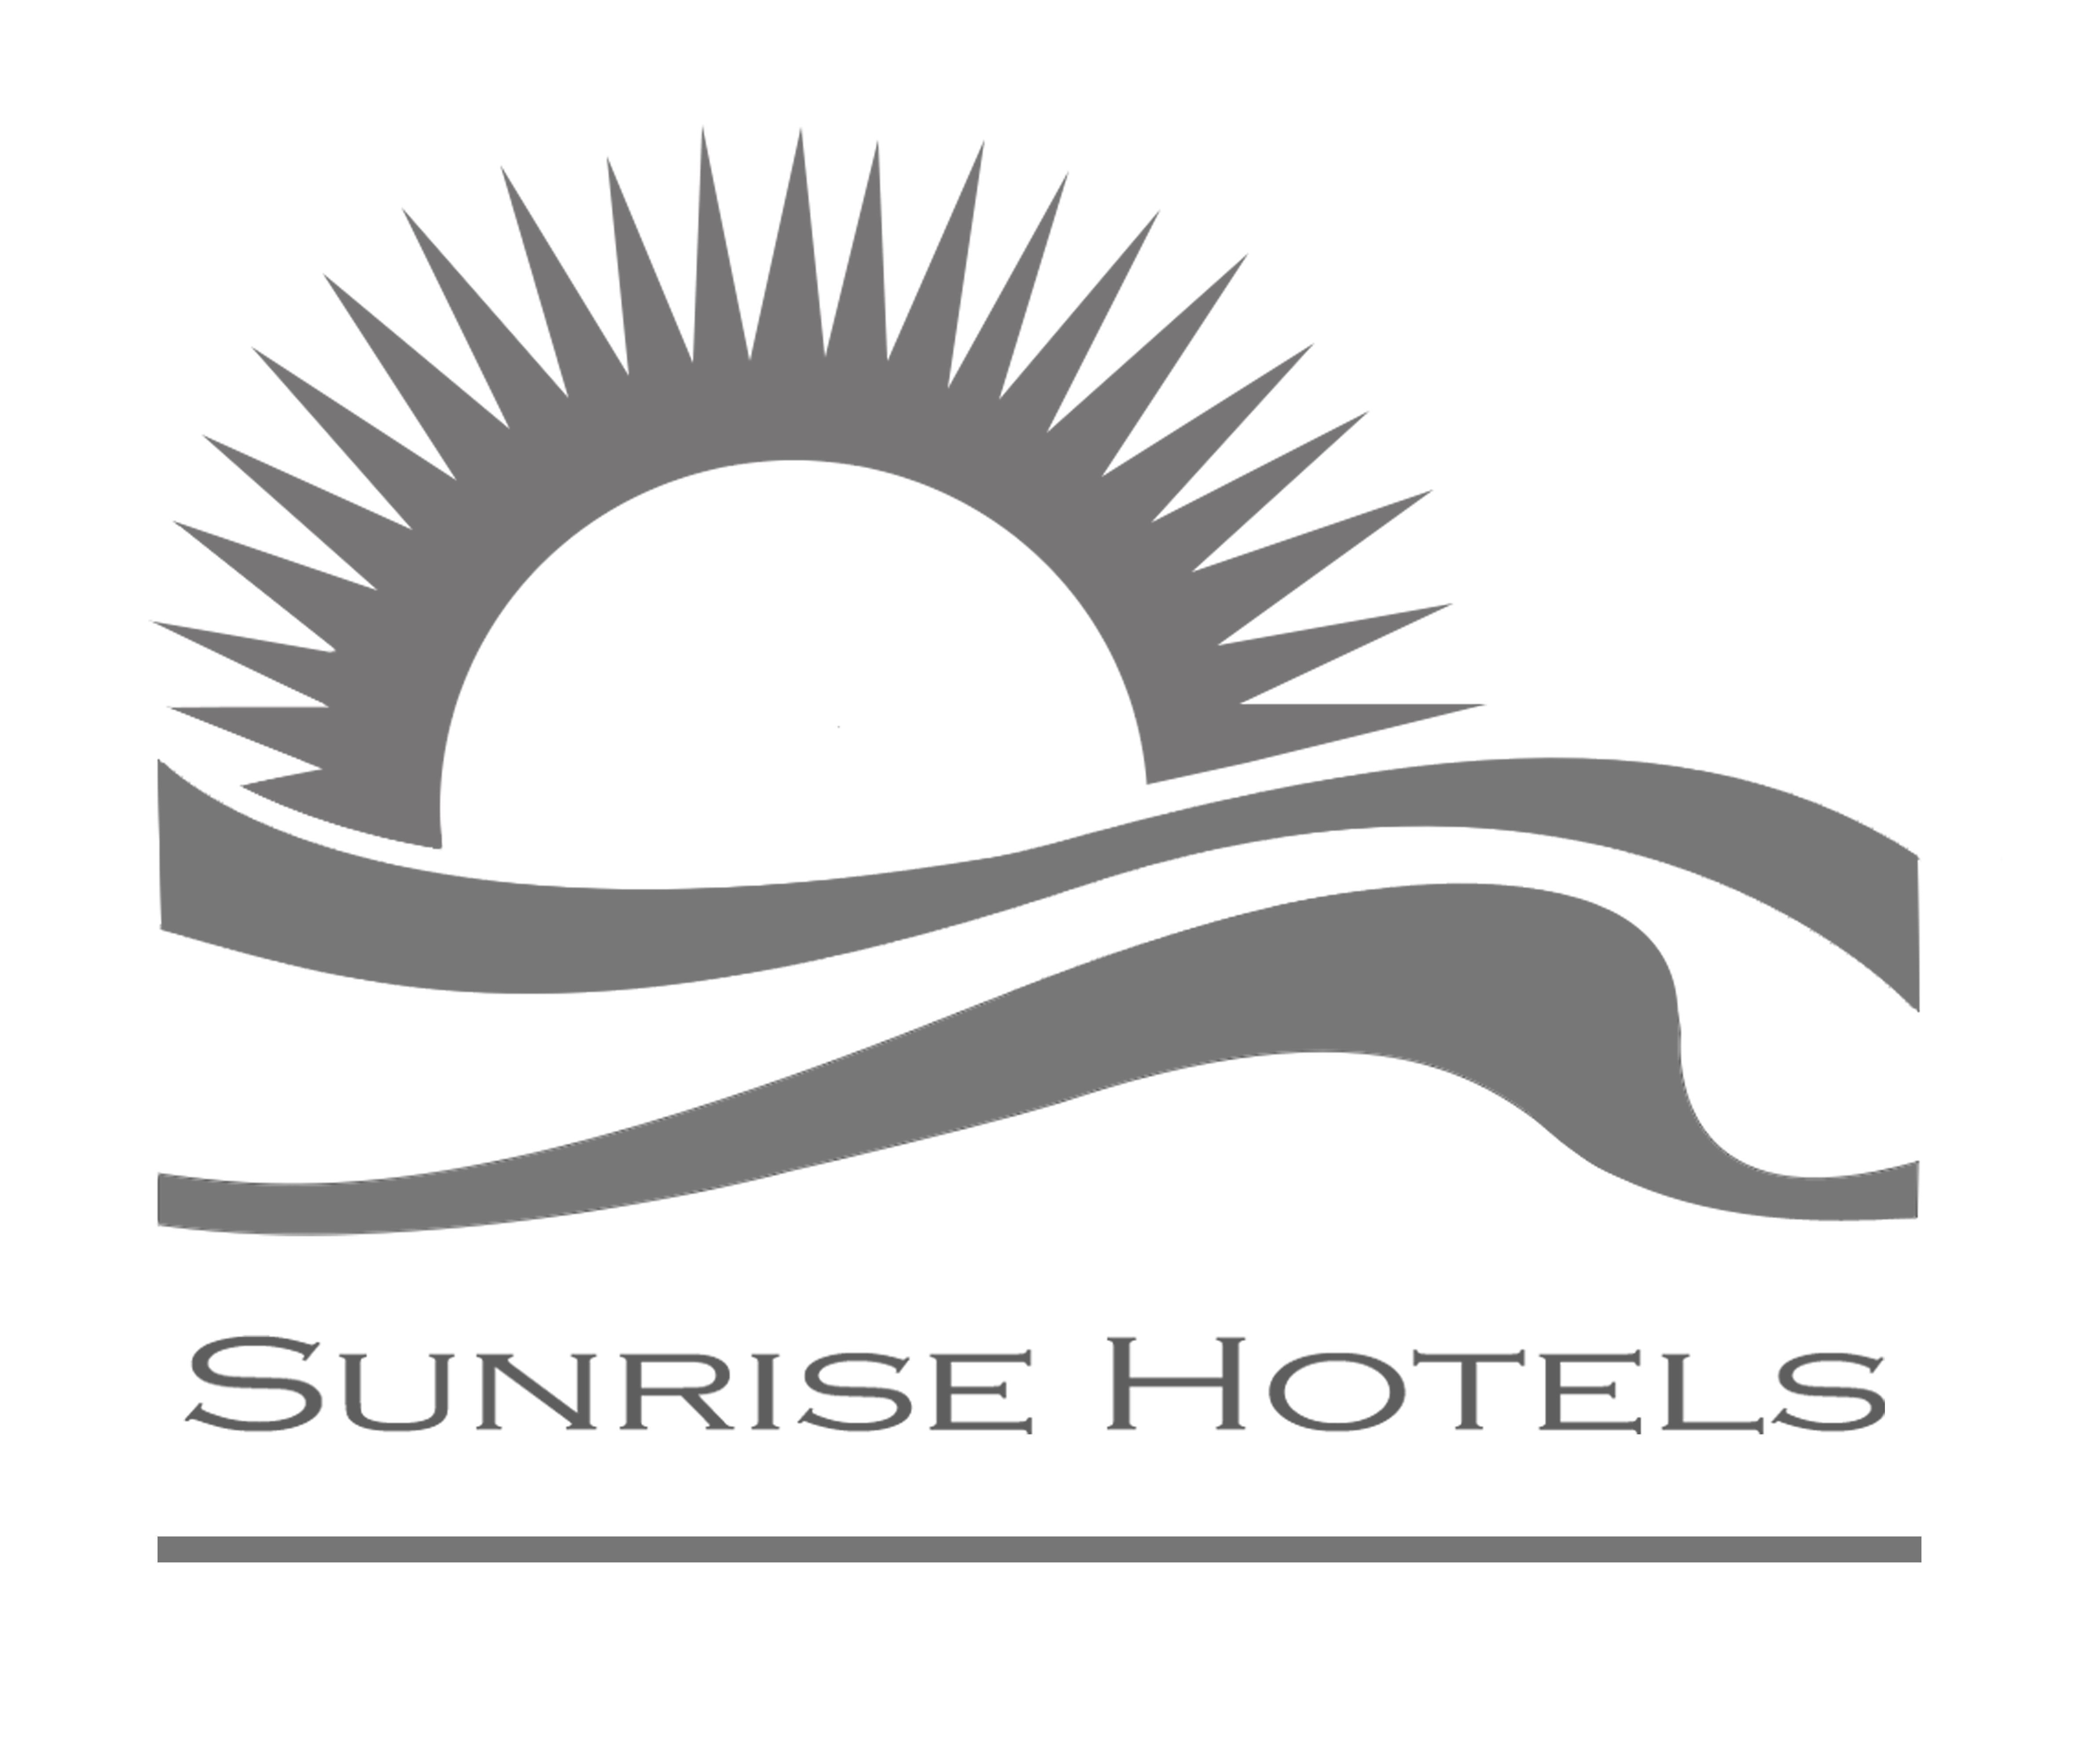 SUNRISE HOTELS